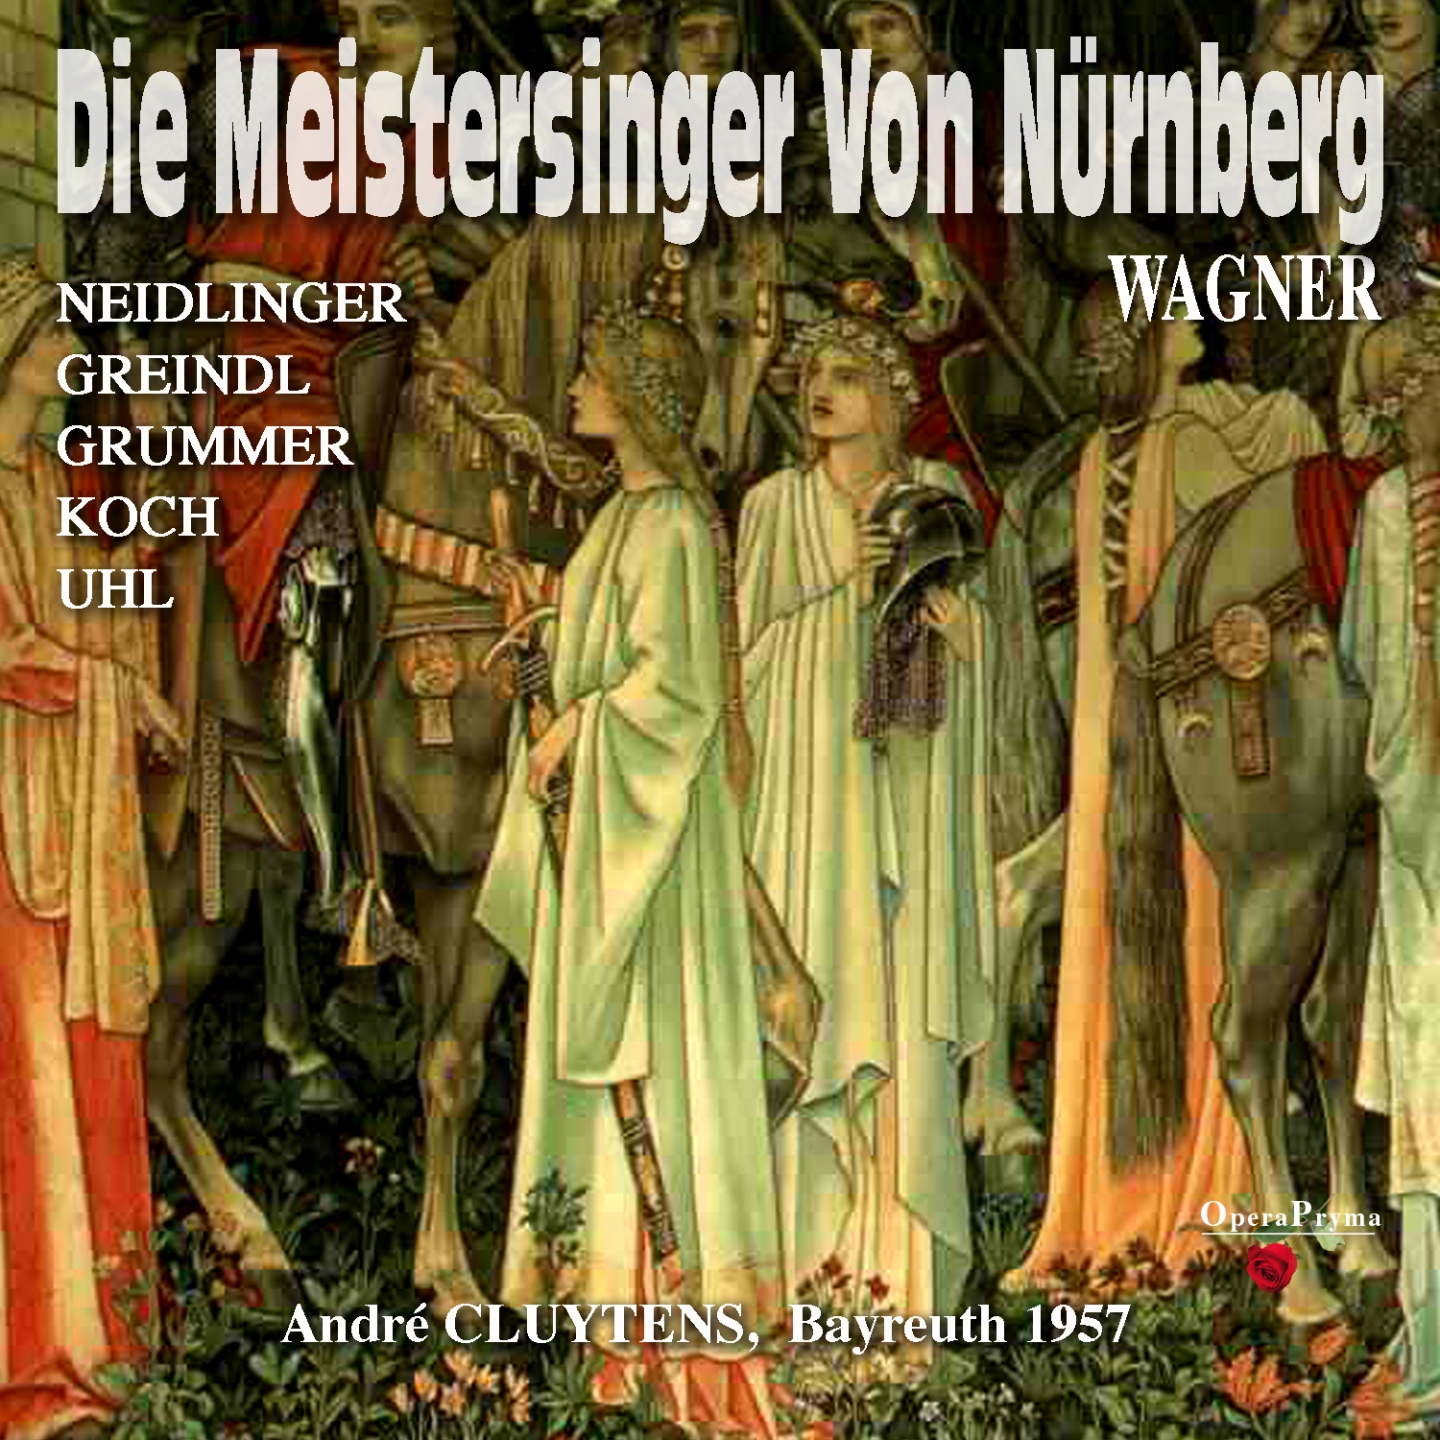 Die Meistersinger von Nü rnberg, Act I: " Nun h rt noch, wie ich' s ernstlich mein'!" Veit Pogner, Beckmesser, Kothner